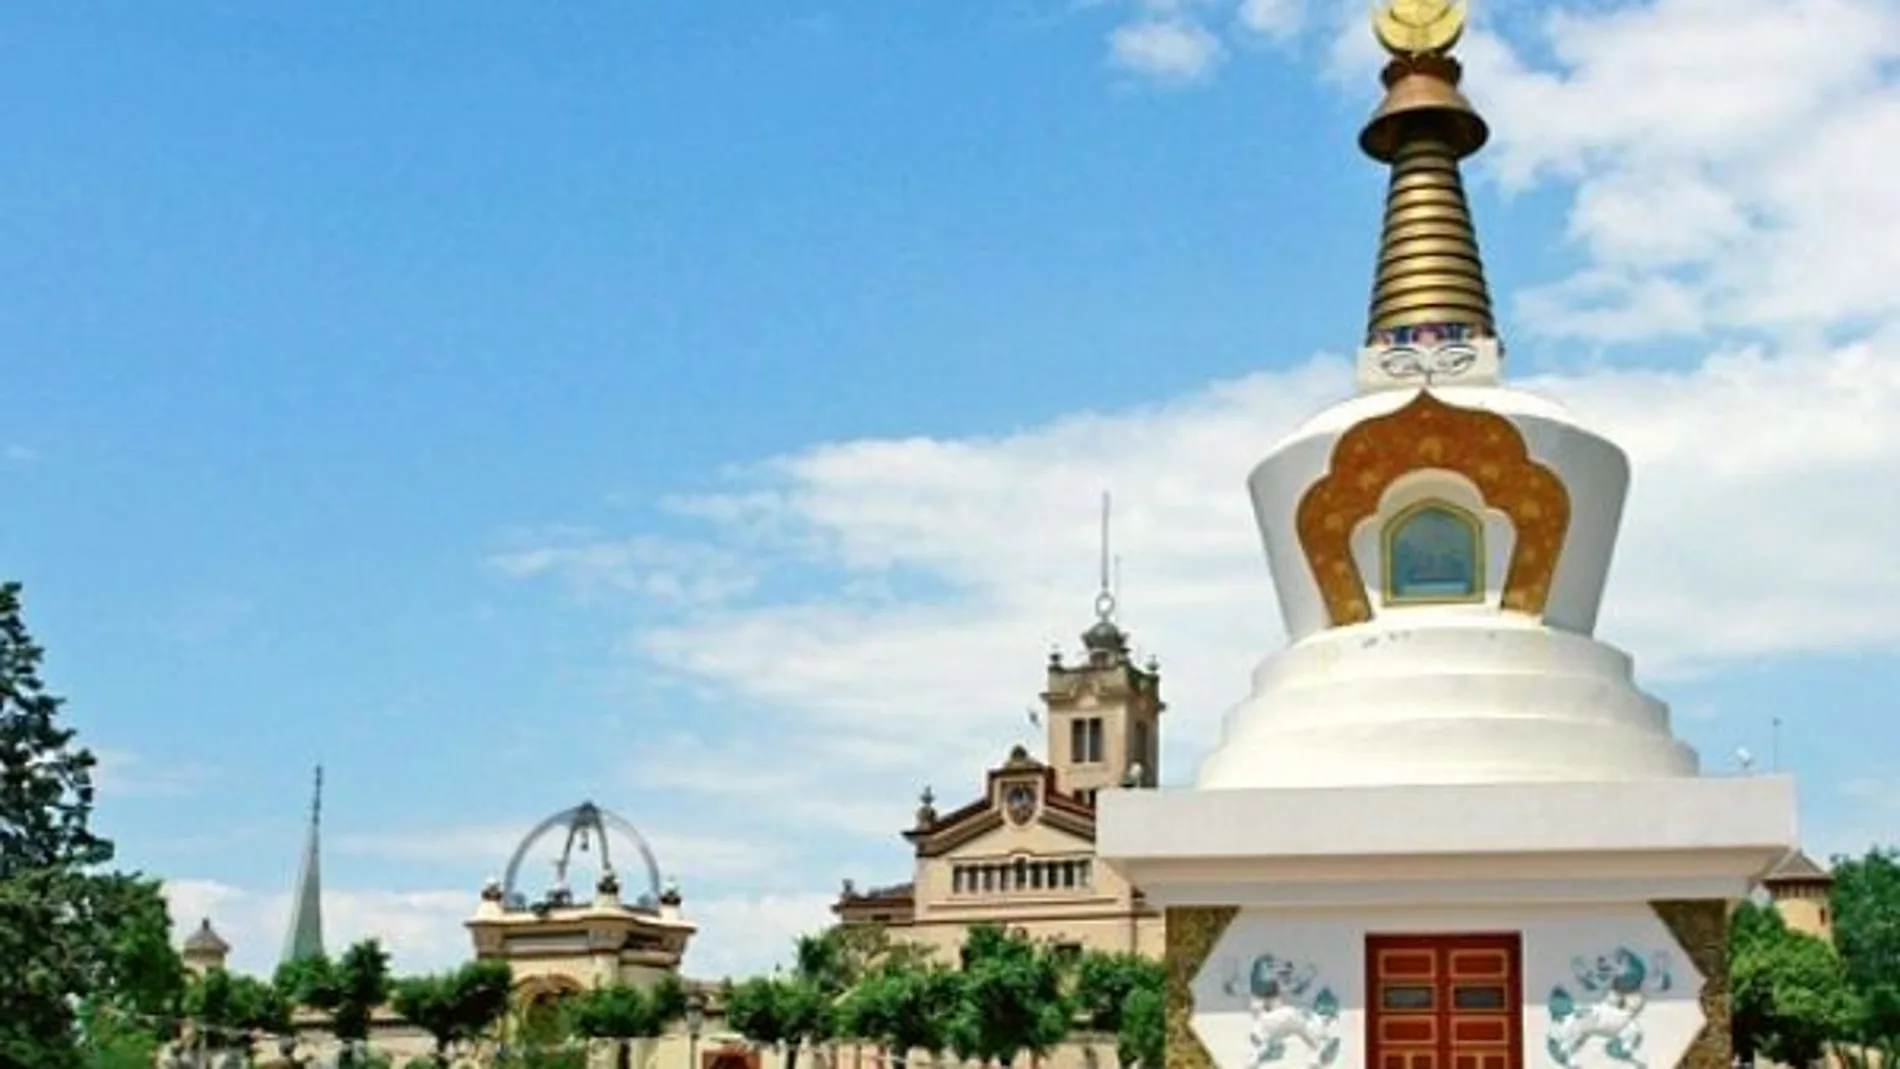 Este es el espectacular y único monasterio budista a solo 30 kilómetros de Barcelona